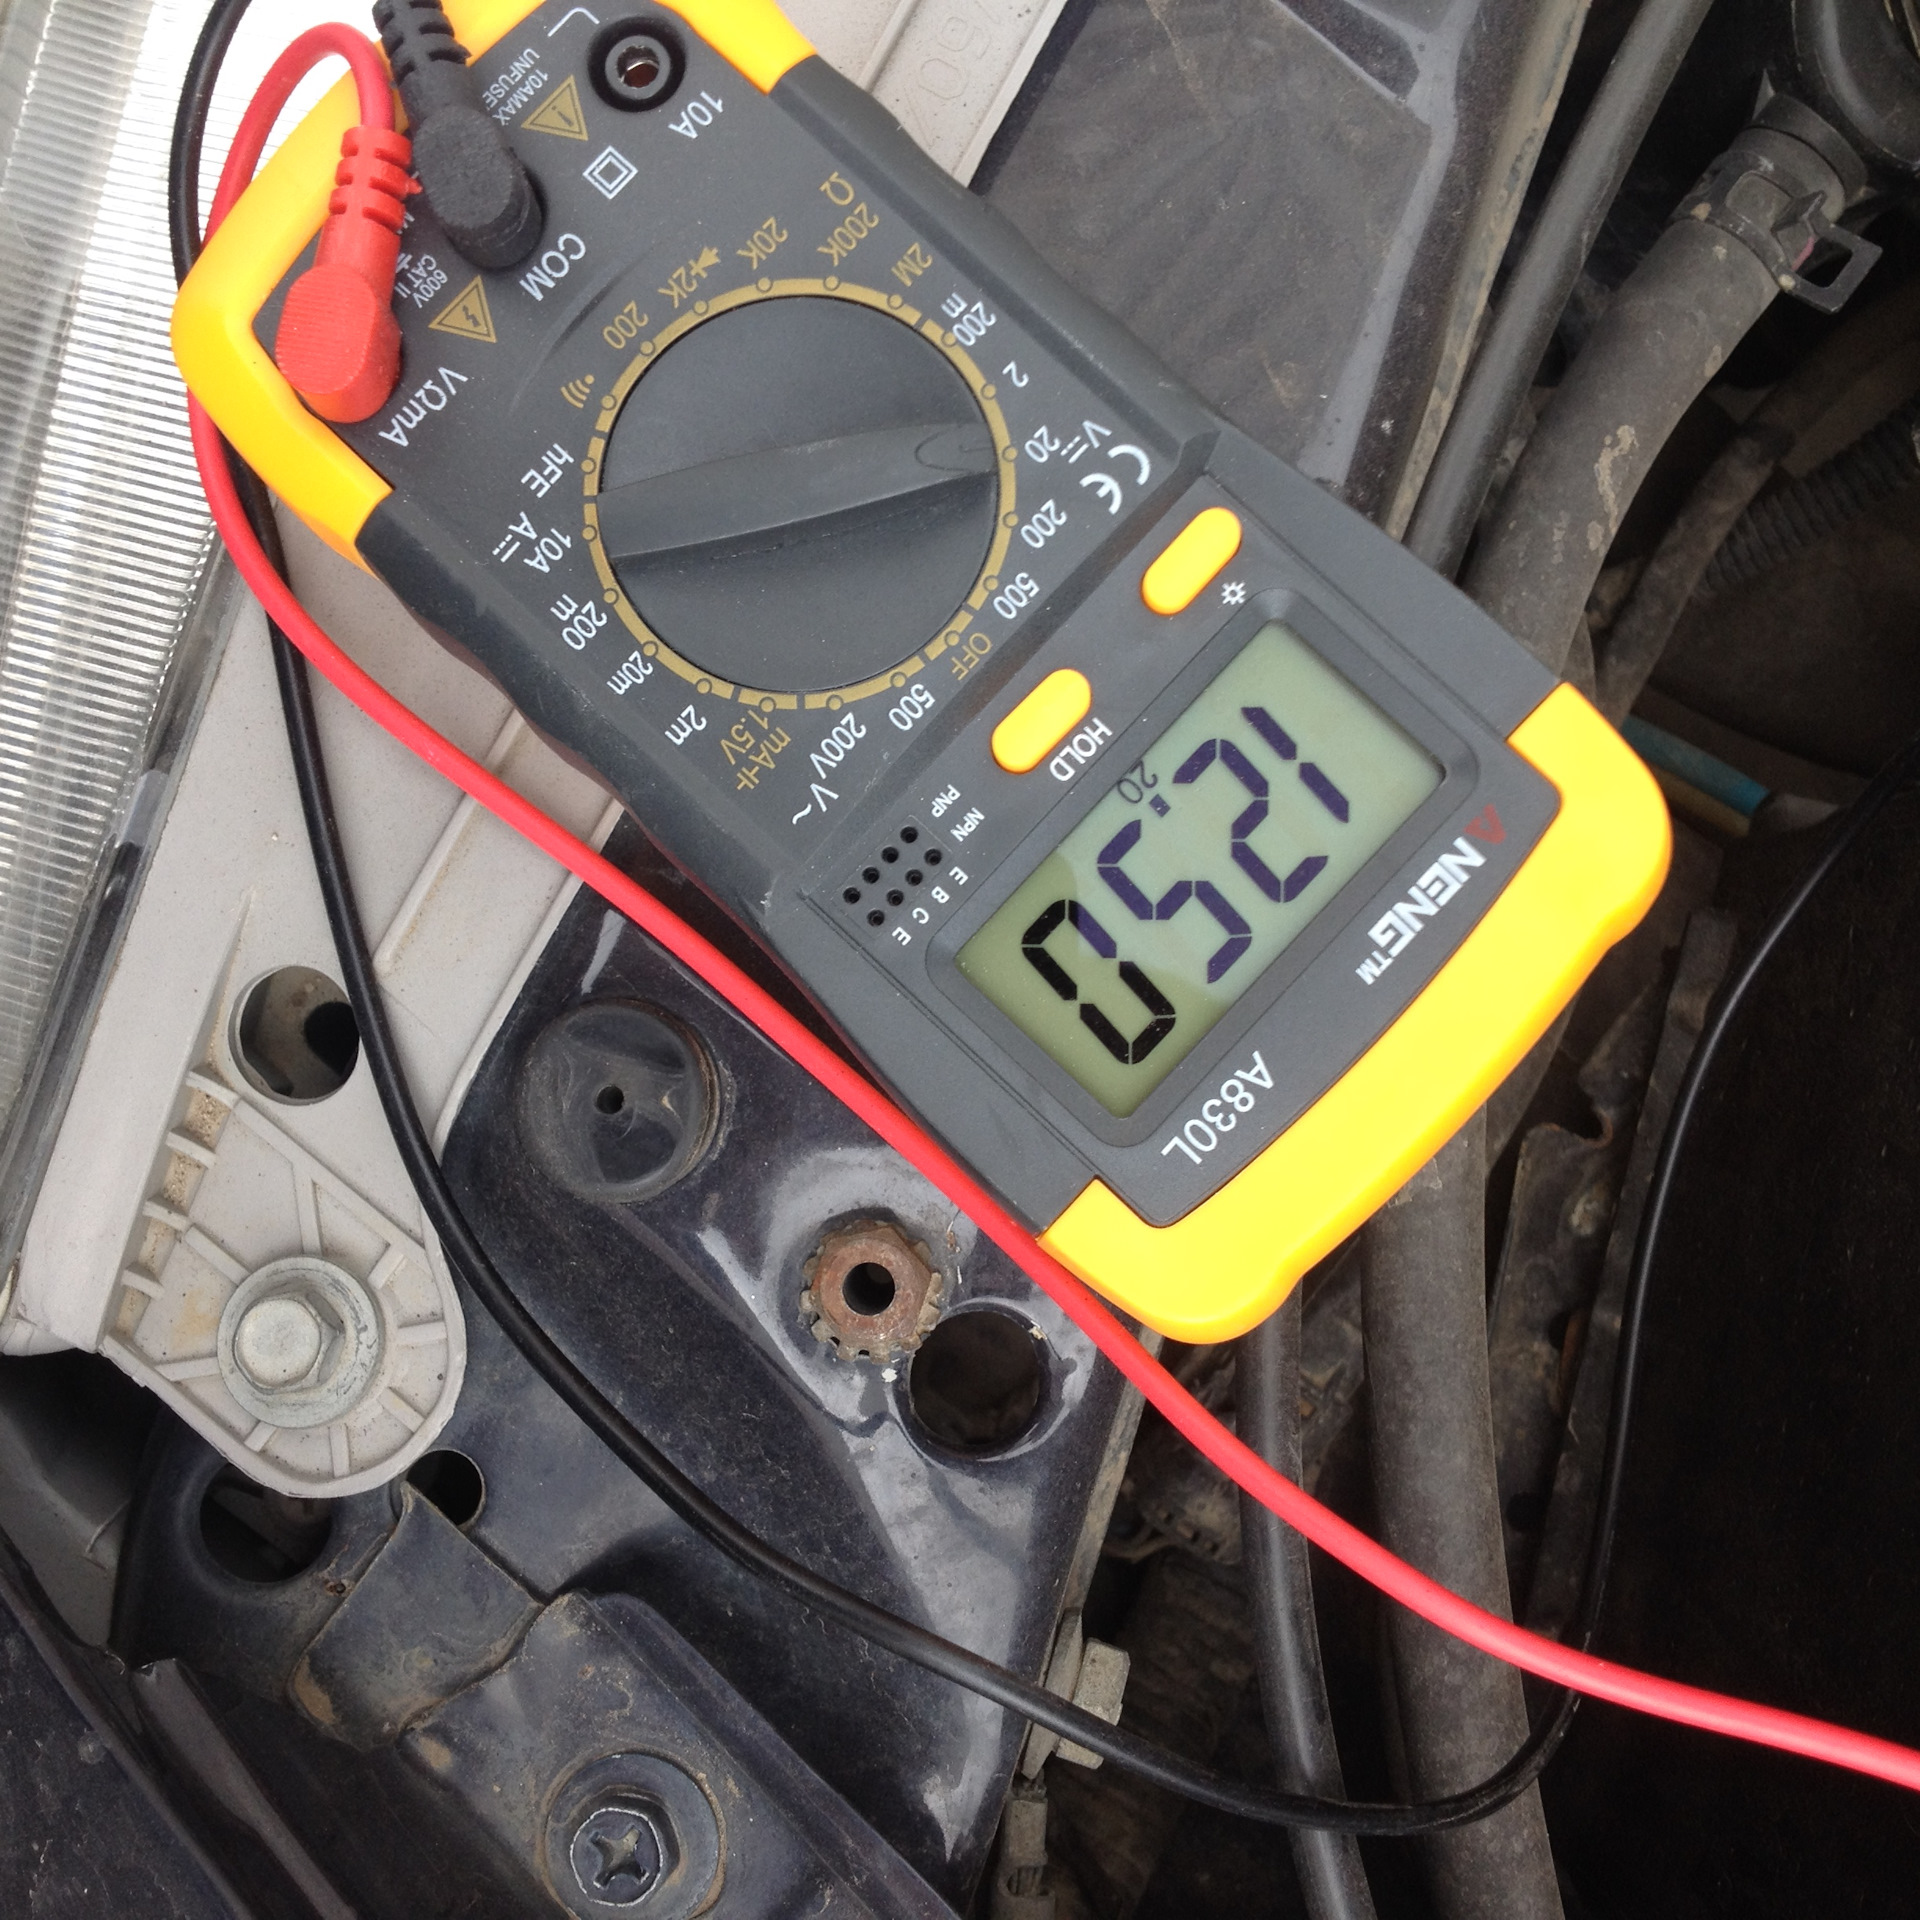 Как проверить зарядку аккумулятора. Измерение напряжения АКБ мультиметром dt831. Проверка 12 вольт мультиметром. Замерить мультиметром напряжение на аккумуляторе автомобиля 12 вольт. Как вольтметром проверить напряжение 12 вольт.